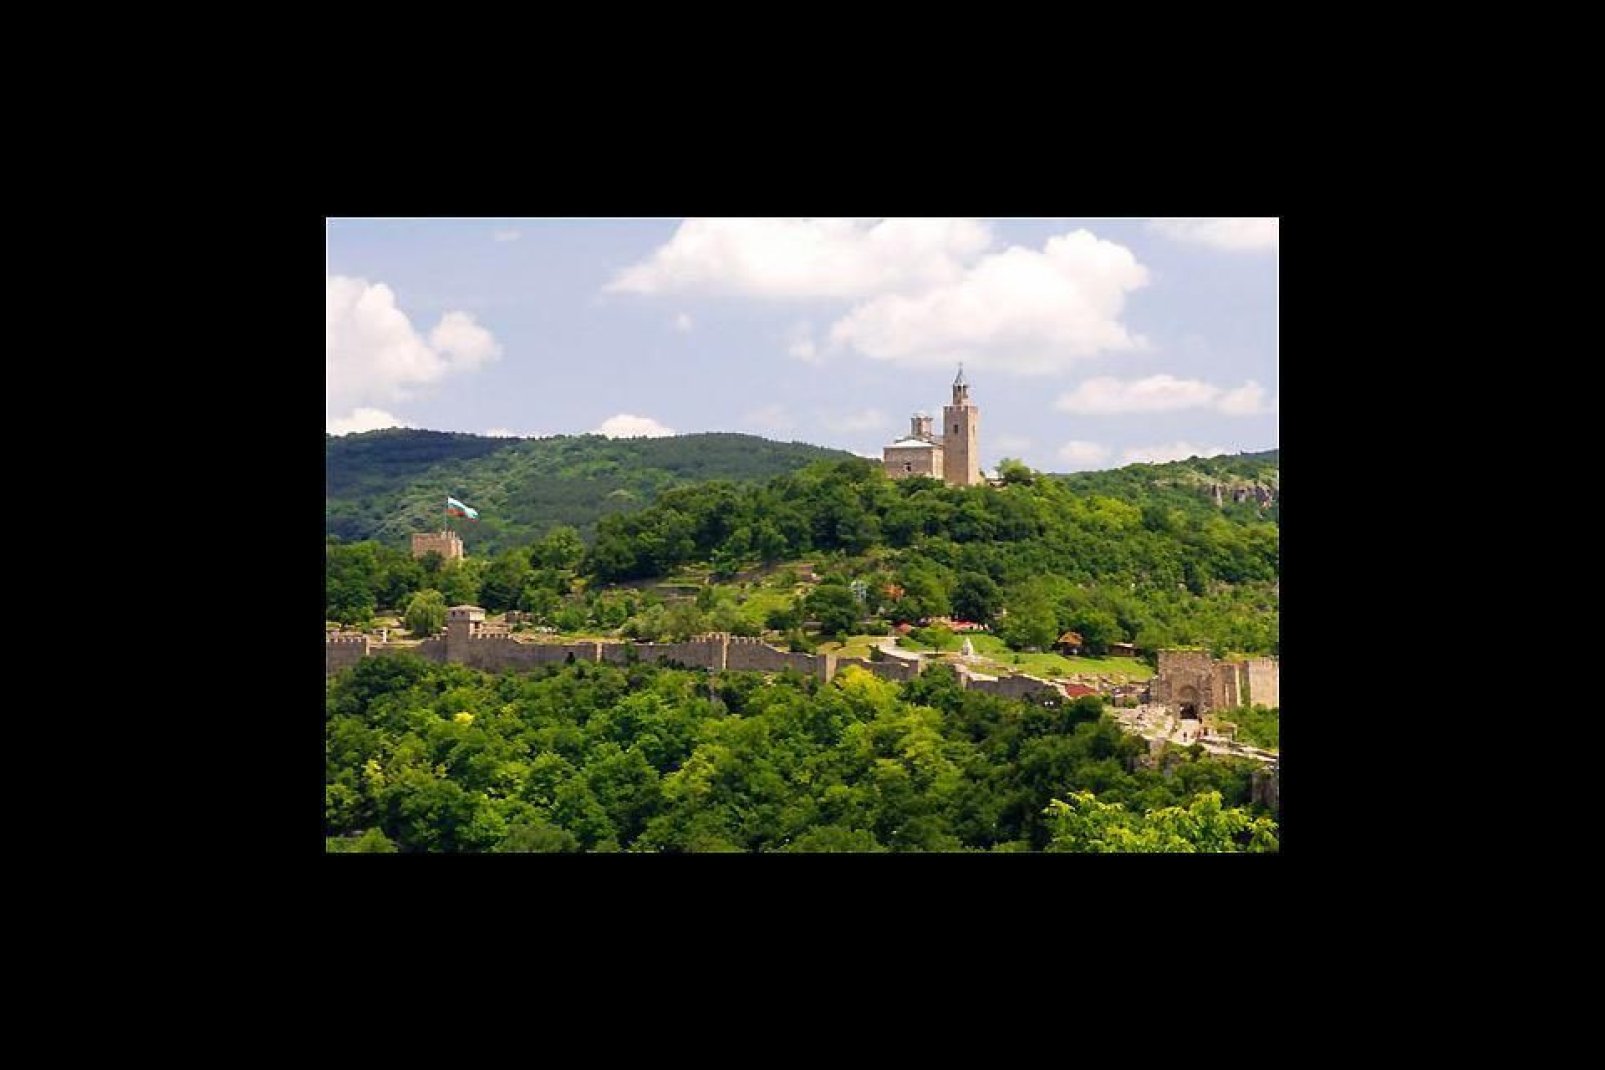 Le château de Veliko Tarnovo est situé sur une colline boisée.